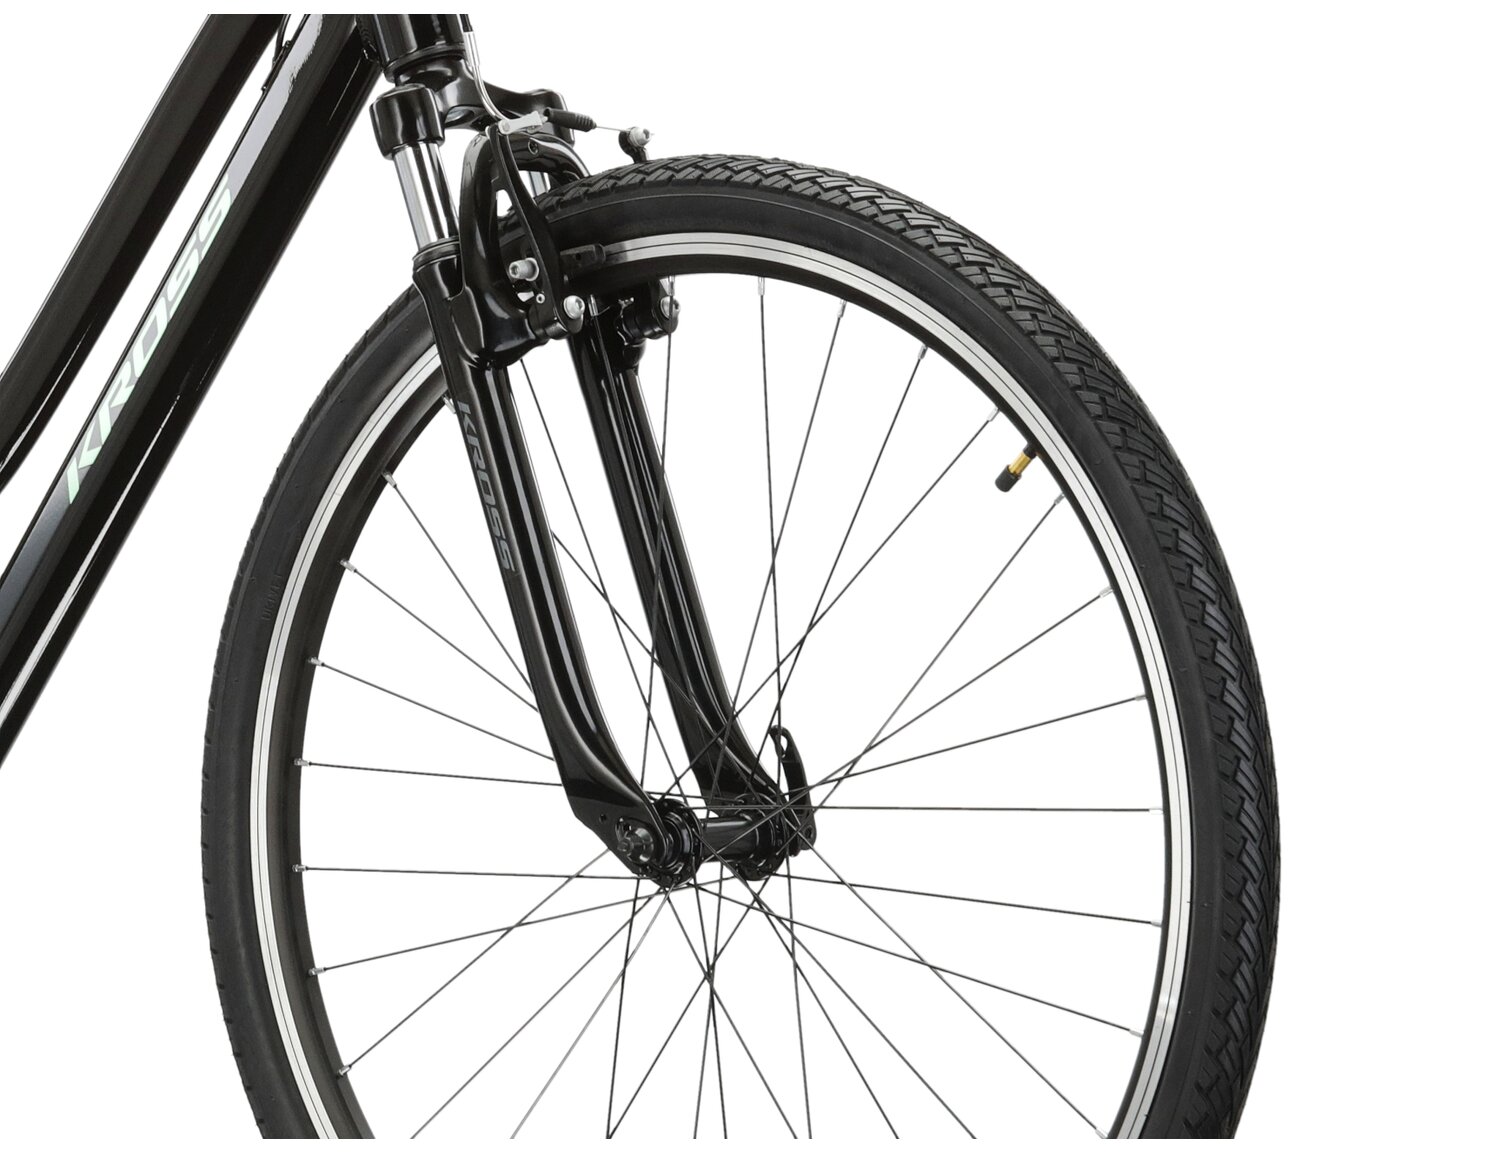 Aluminowa rama, amortyzowany widelec oraz opony Wanda w rowerze crossowym damskim KROSS Evado 2.0 